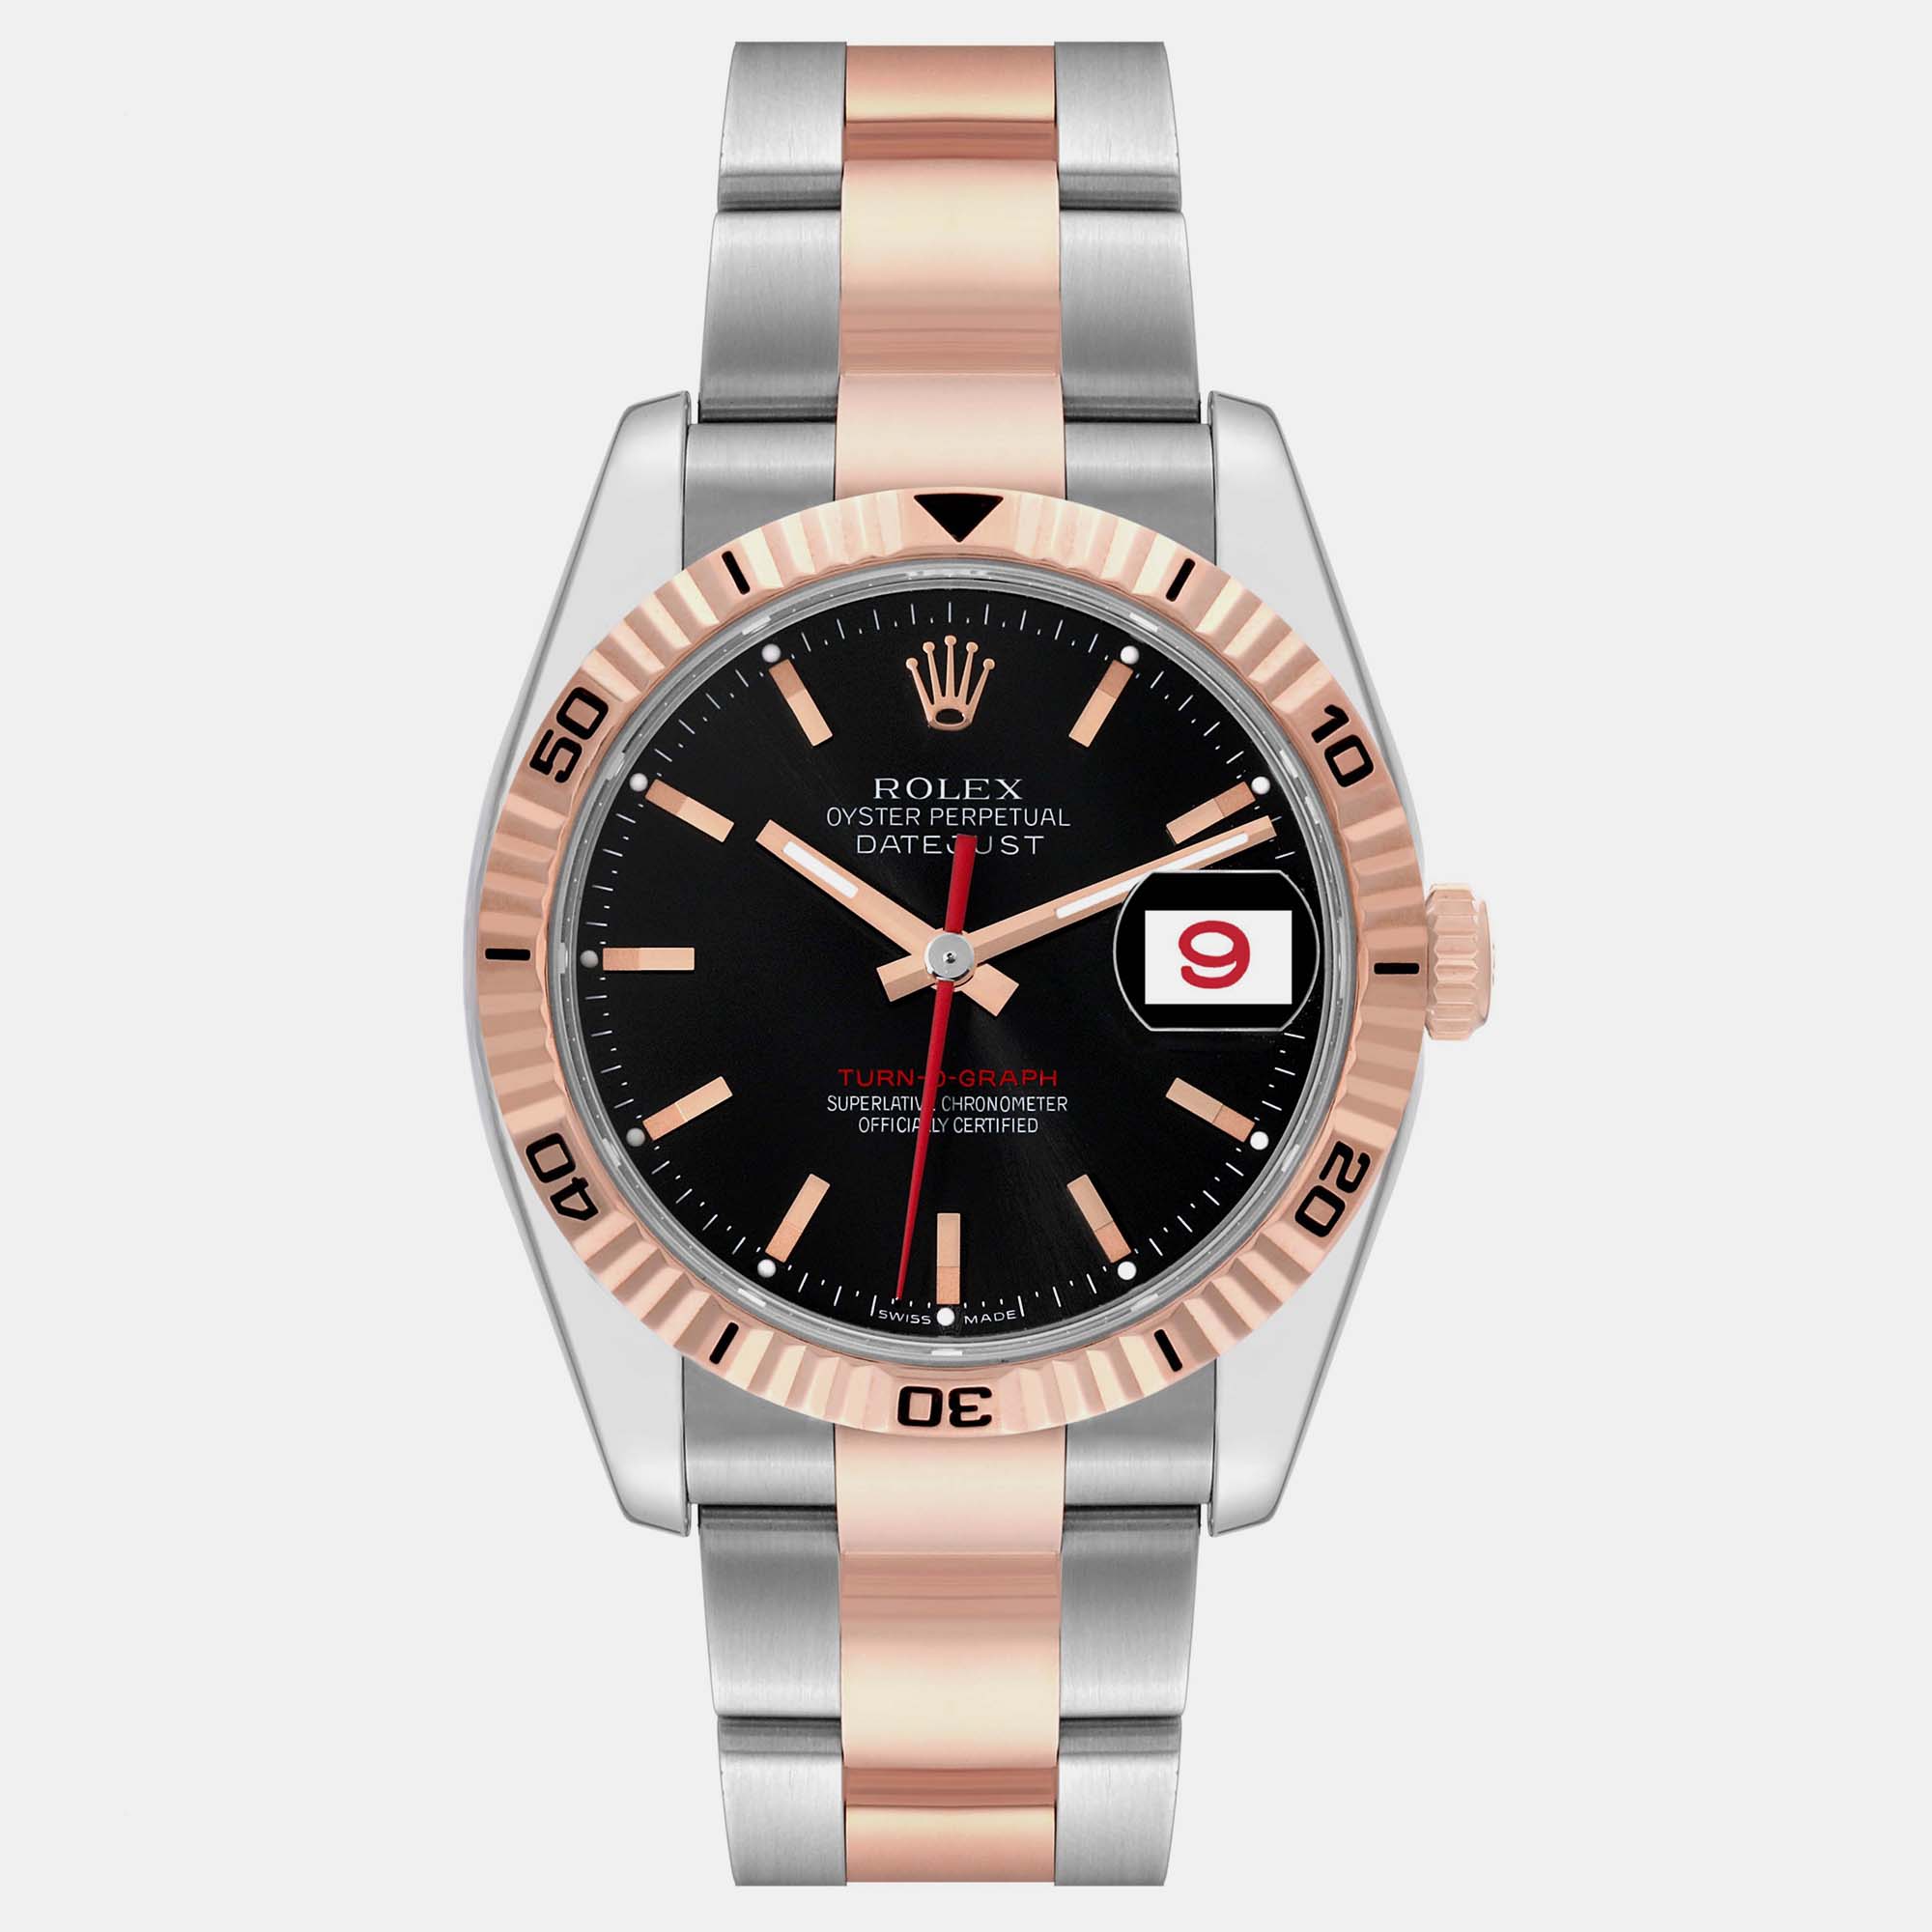 Rolex turnograph datejust steel rose gold men's watch 36.0 mm